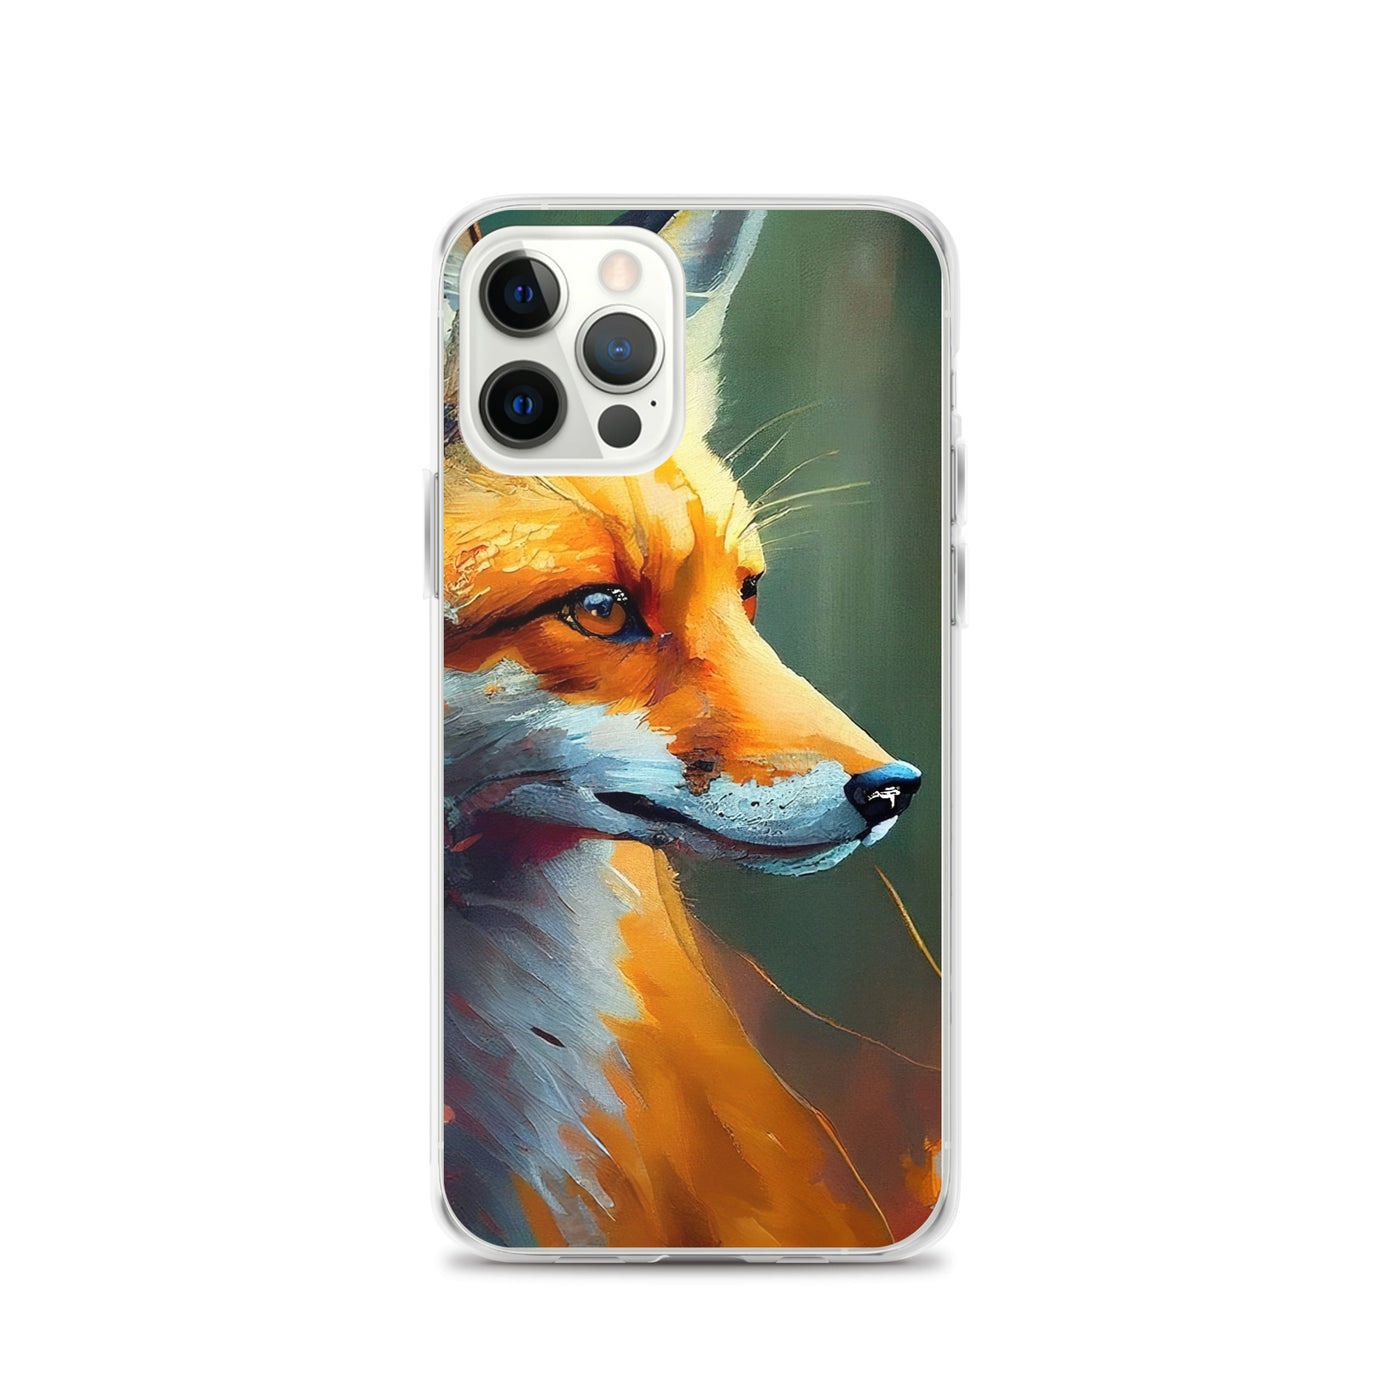 Fuchs - Ölmalerei - Schönes Kunstwerk - iPhone Schutzhülle (durchsichtig) camping xxx iPhone 12 Pro